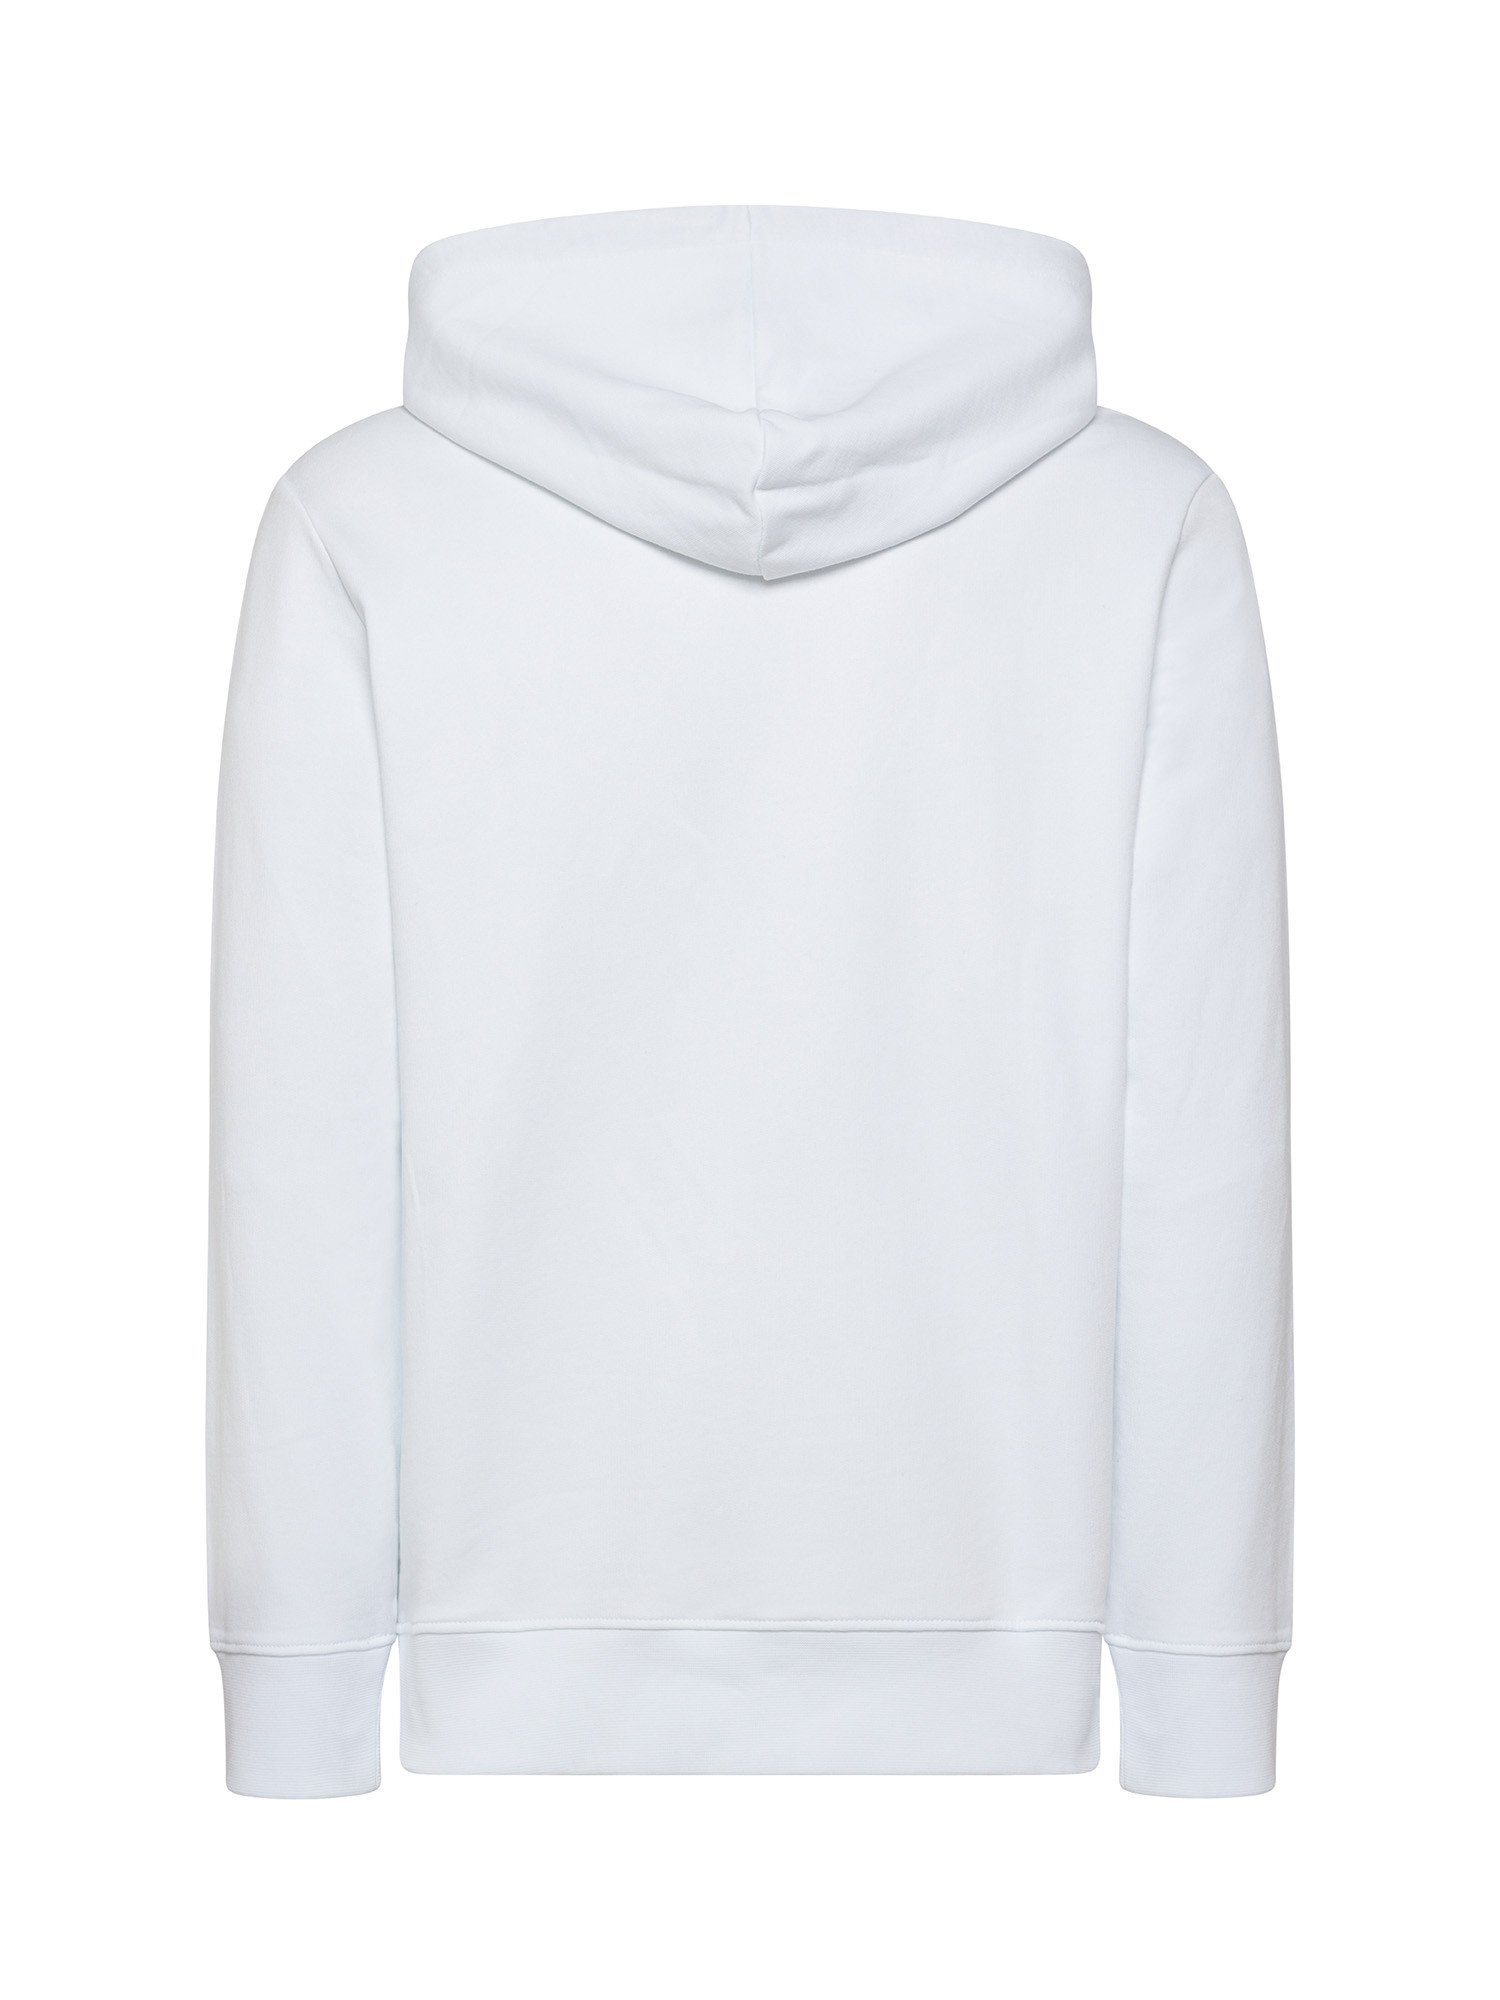 Armani Exchange - Sweatshirt with hood and logo, White, large image number 1